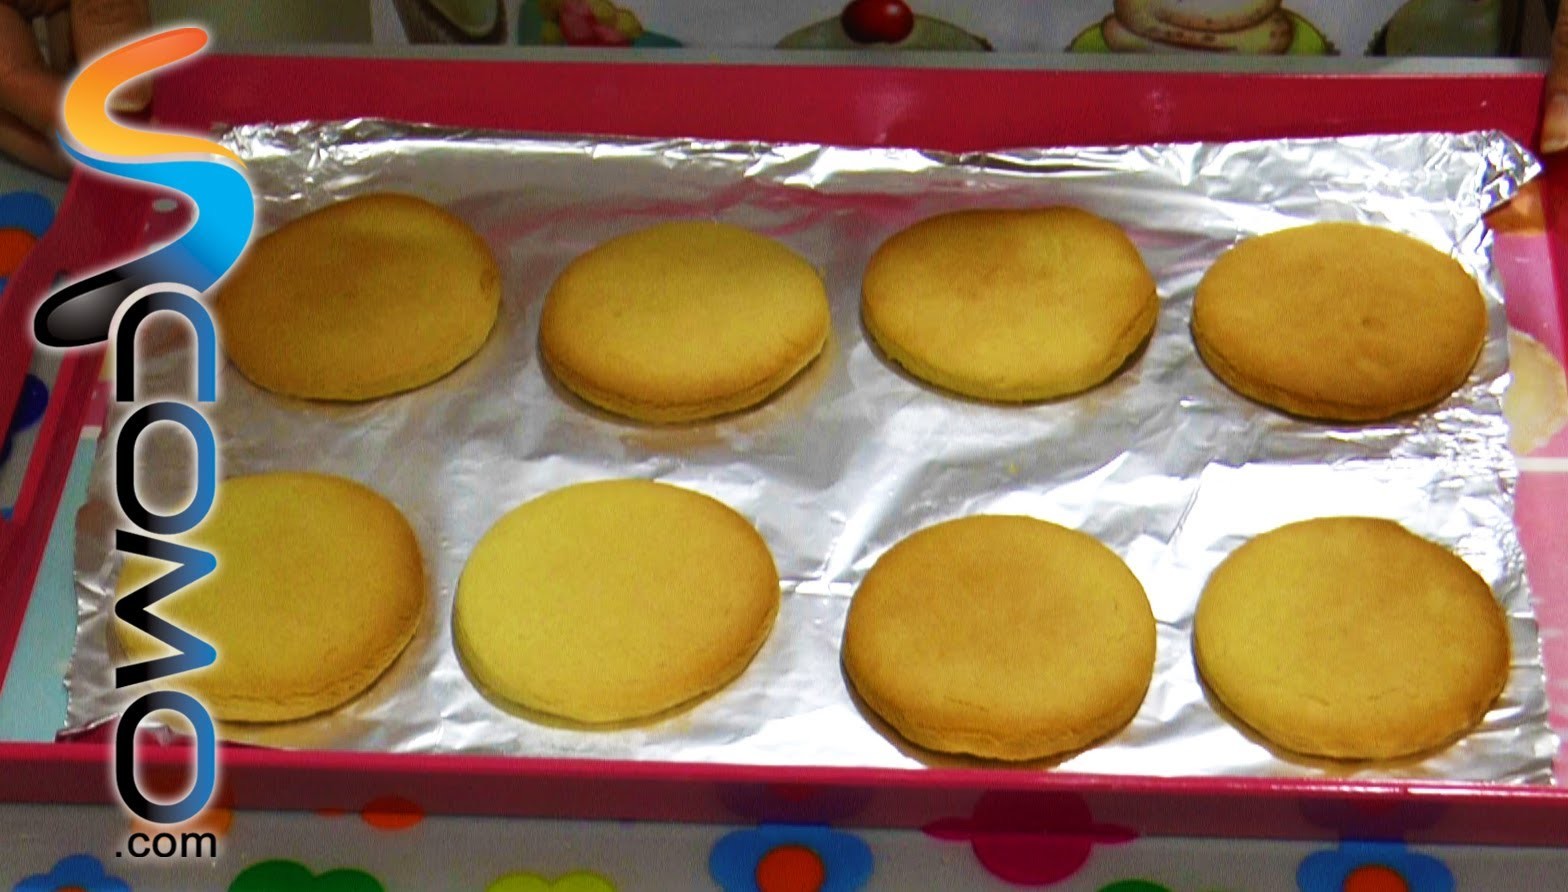 Galletas de Mantequilla - Butter Cookies